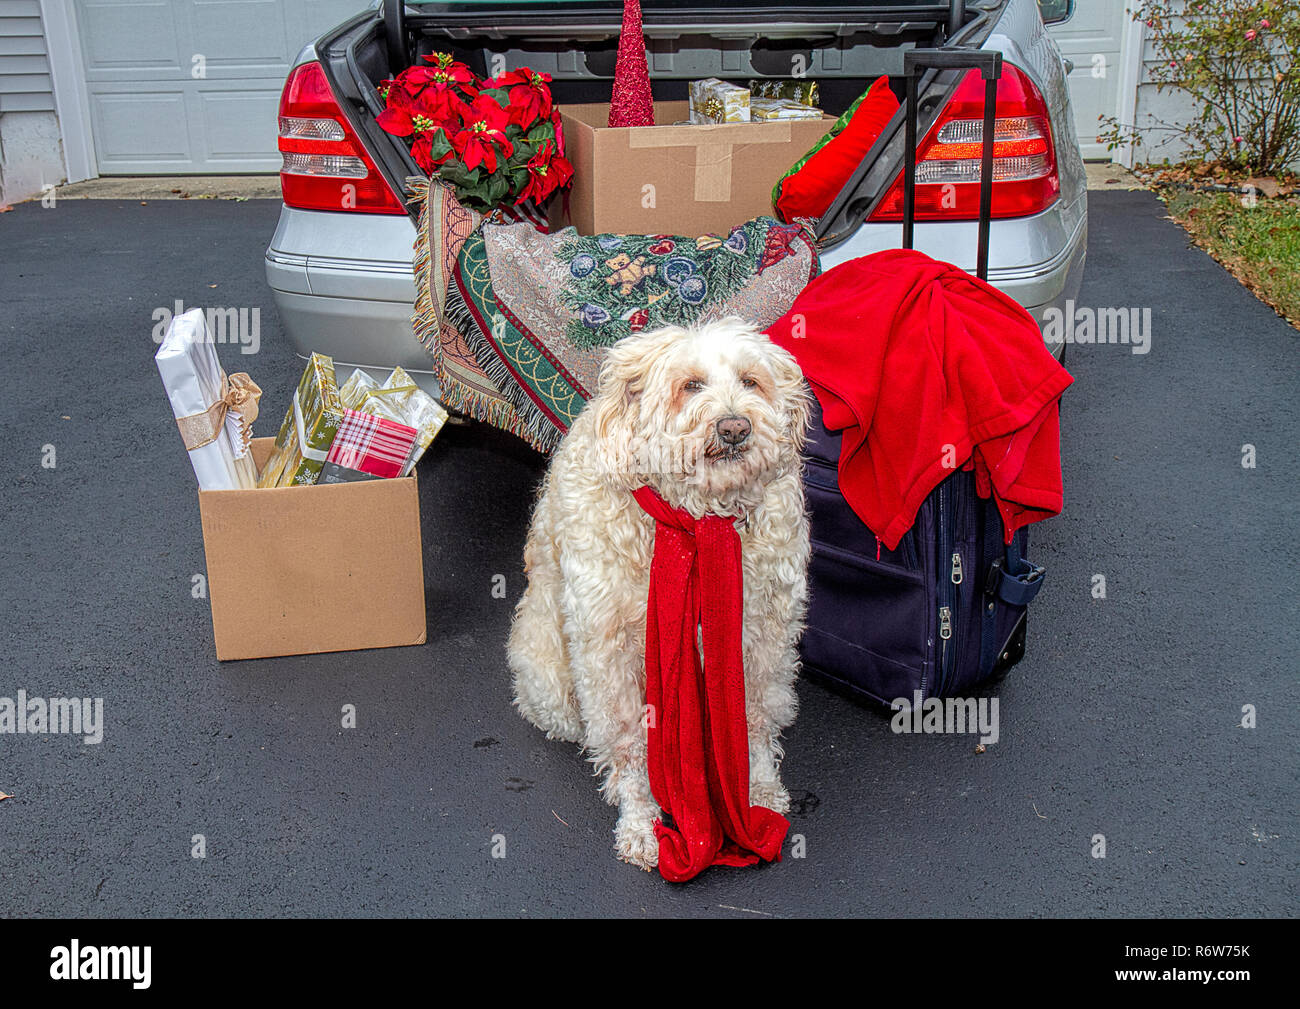 Coffre de voiture paniers pour voyager pendant les vacances de Noël. Rempli d'assurance, les cadeaux, les poinsettias et plus encore. Grand chien blanc attend patiemment. Banque D'Images